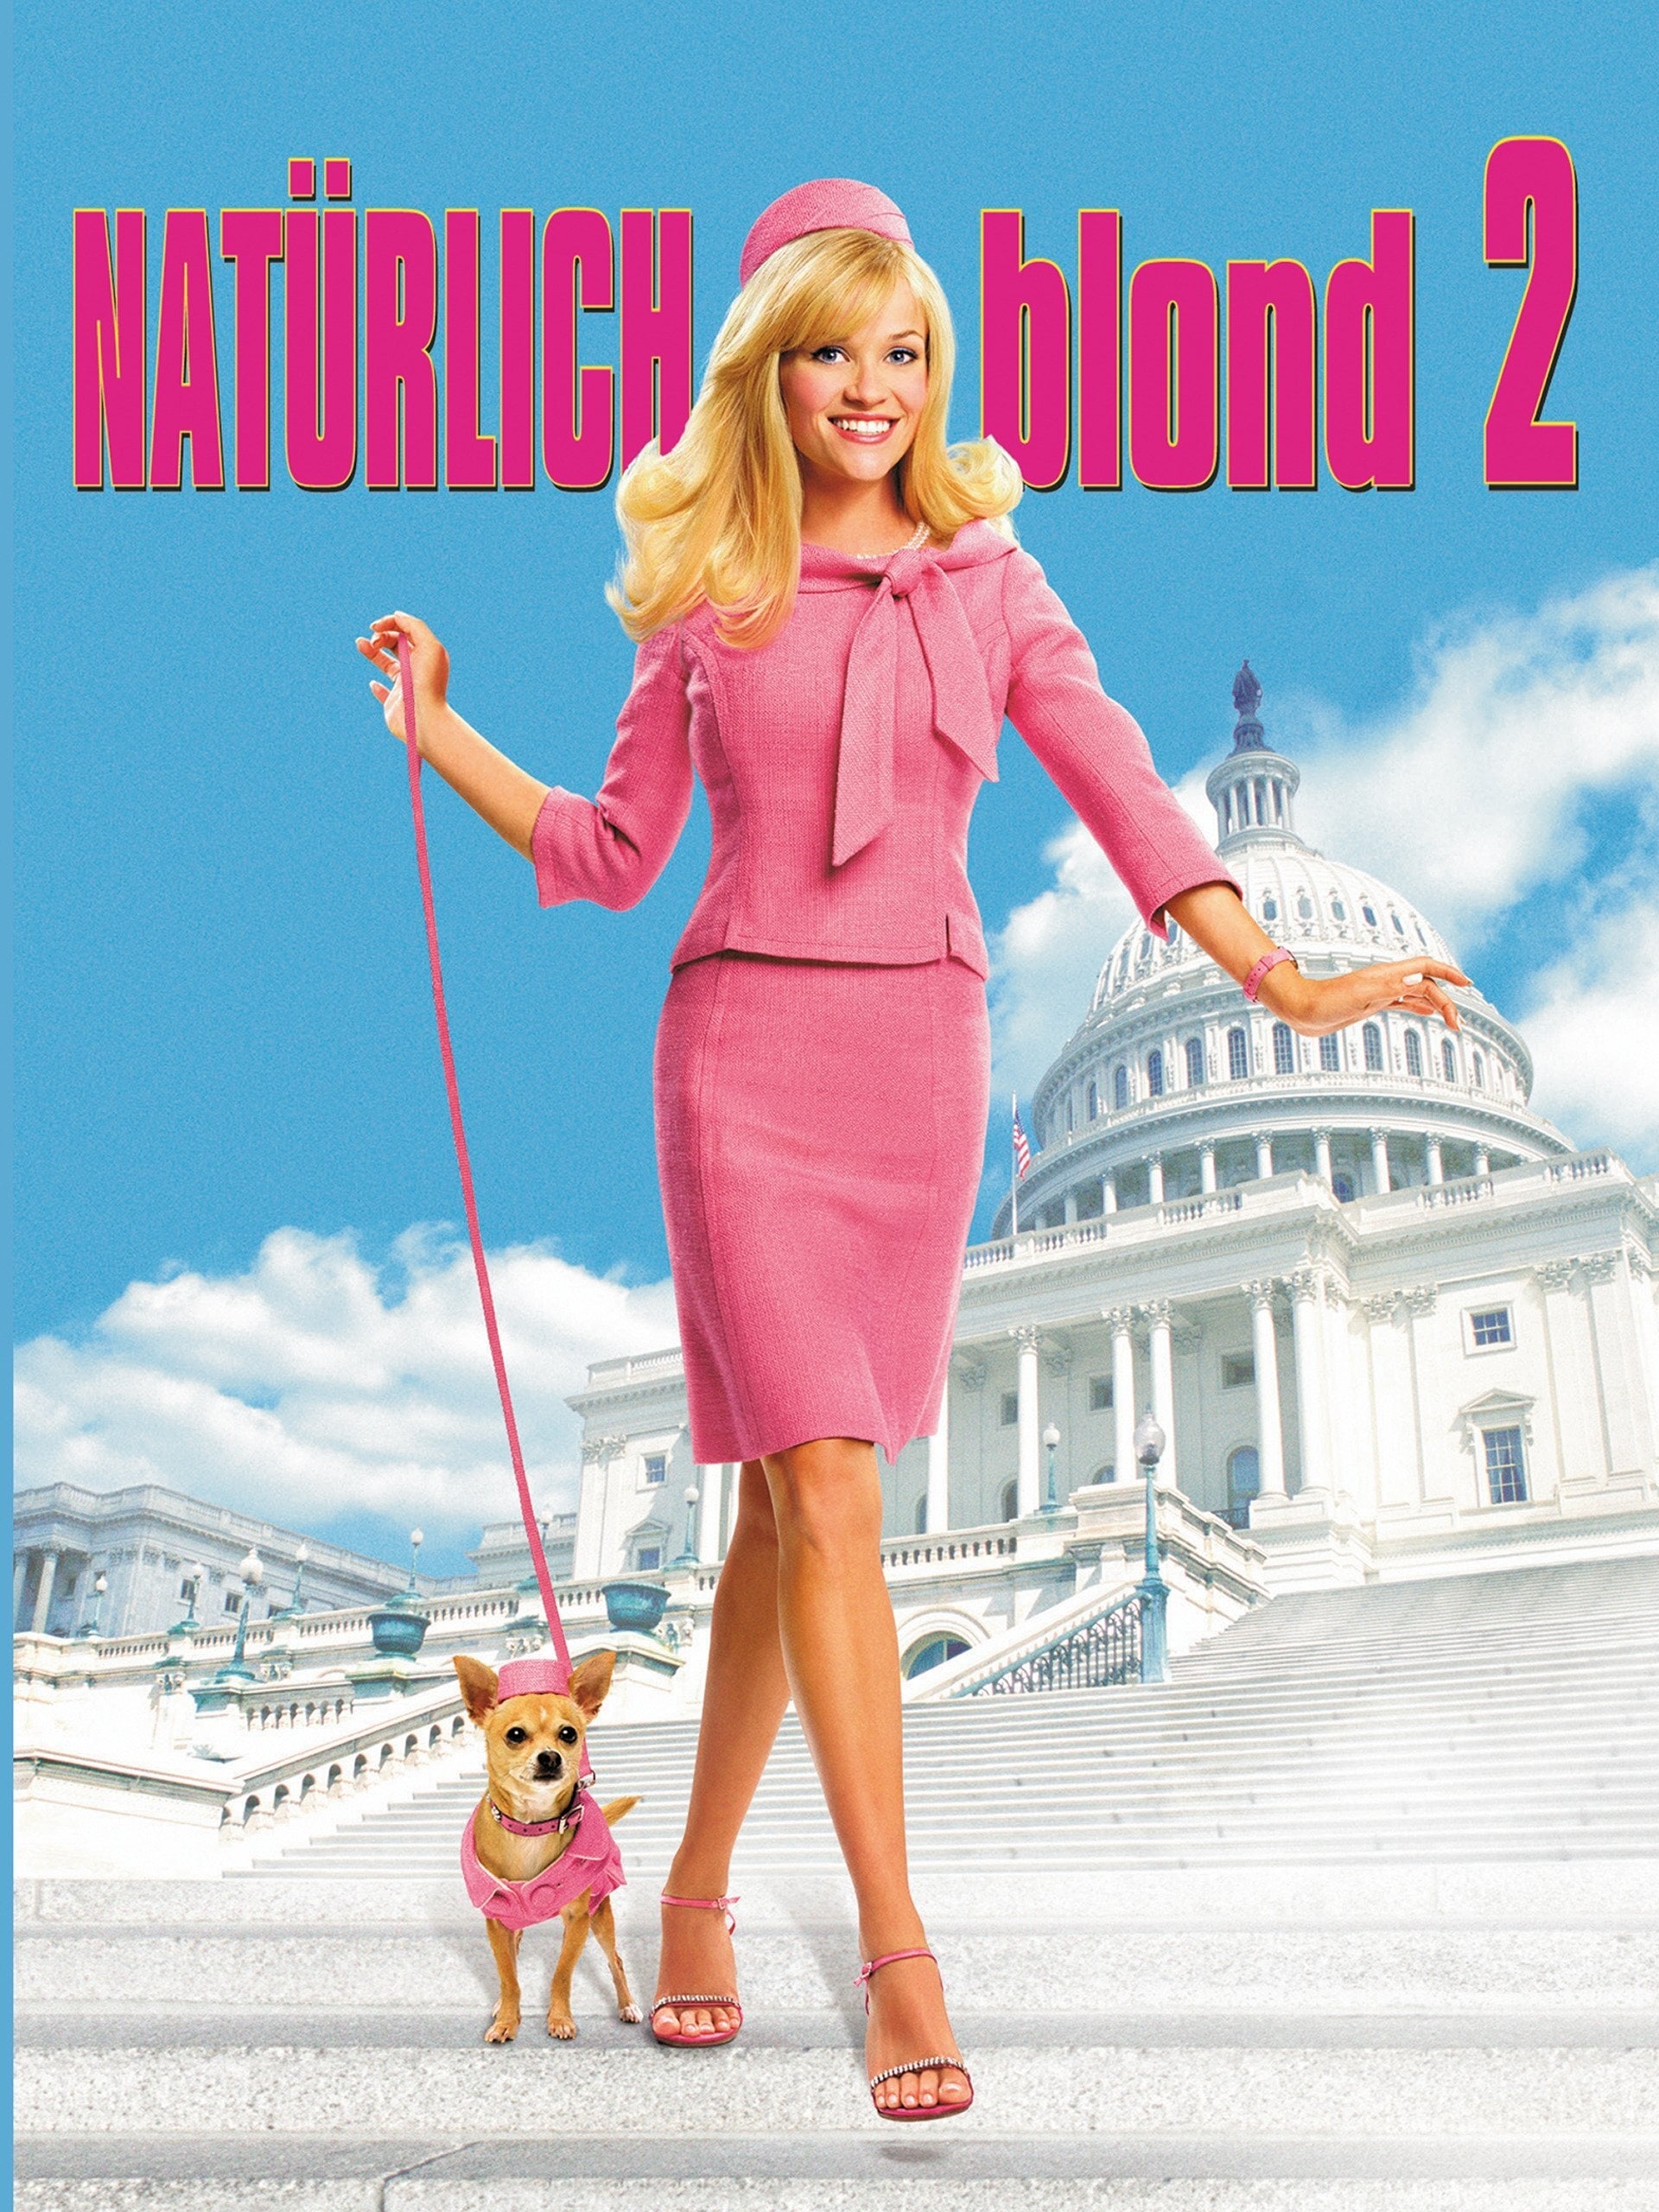 Plakat von "Natürlich blond 2"